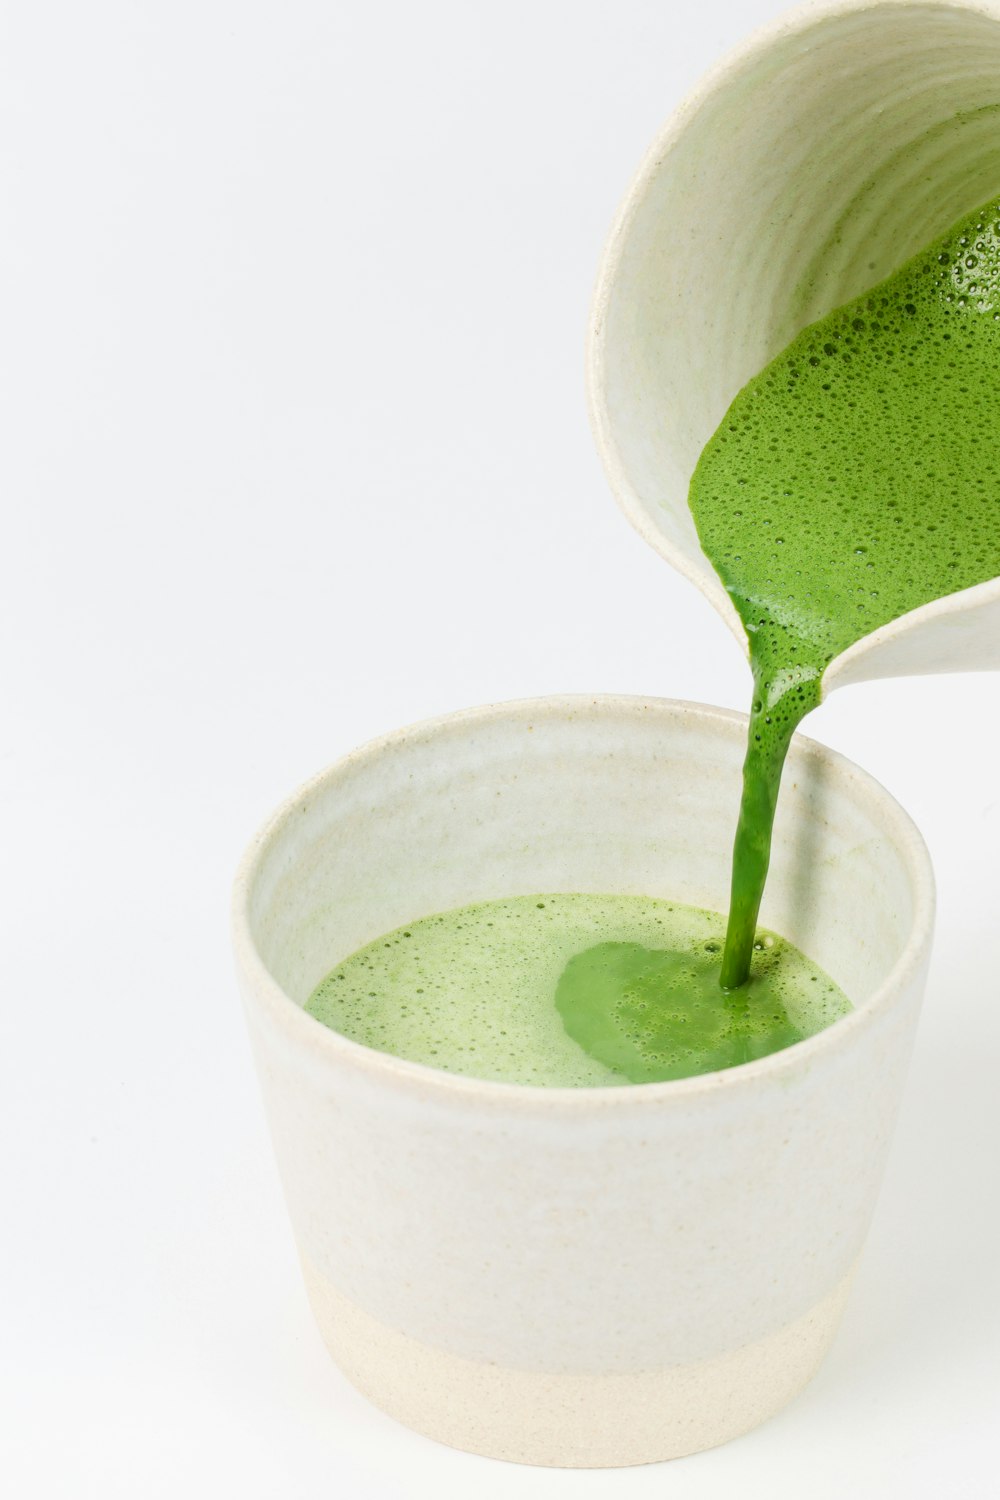 liquido verde in tazza di ceramica bianca